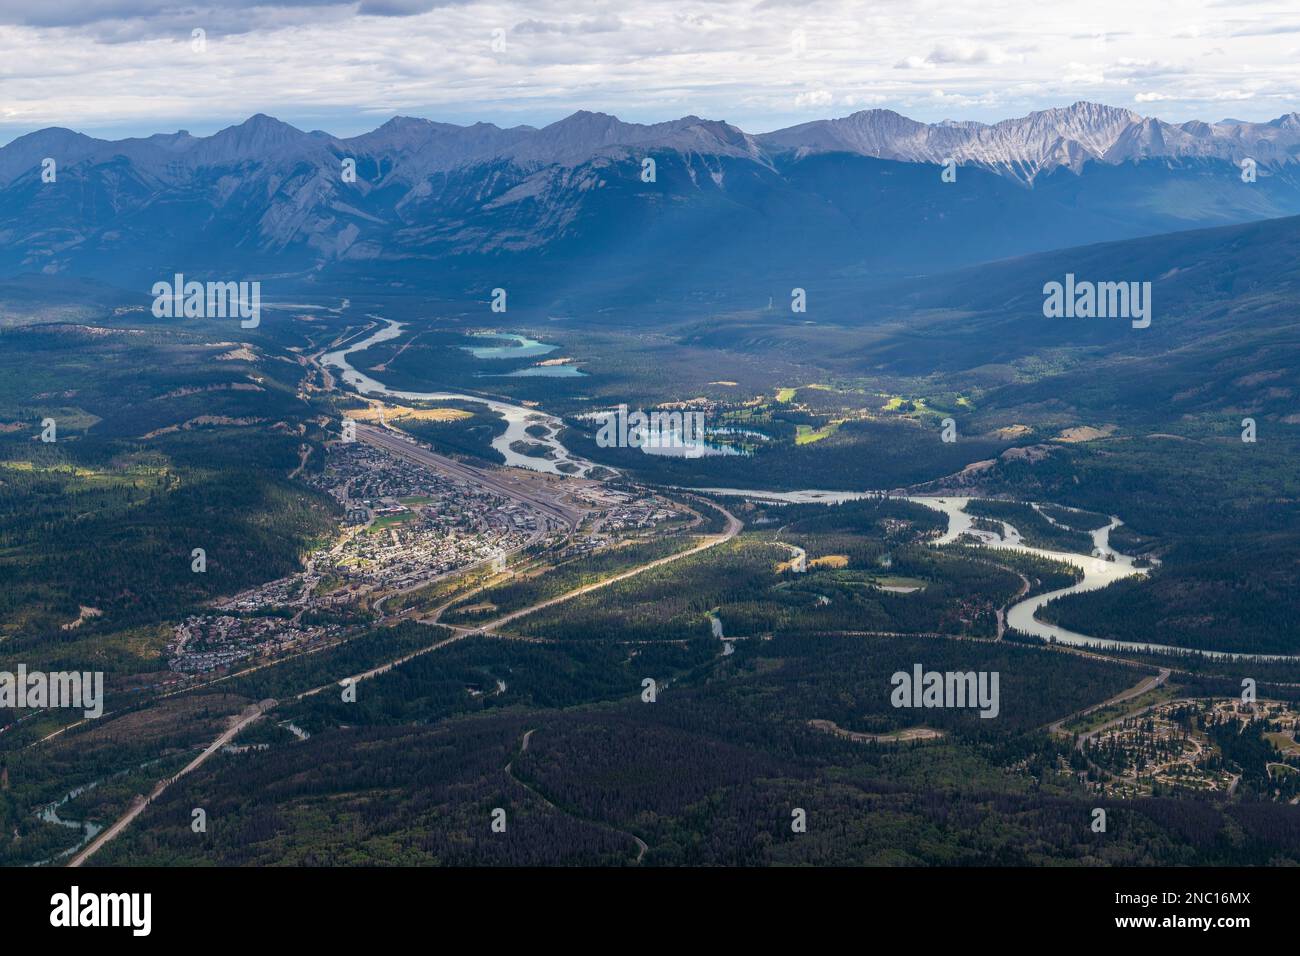 Ciudad de Jasper y paisaje del río Athabasca con las montañas rocosas canadienses vistas desde el Monte Whistler, Parque Nacional Jasper, Columbia Británica, Canadá. Foto de stock